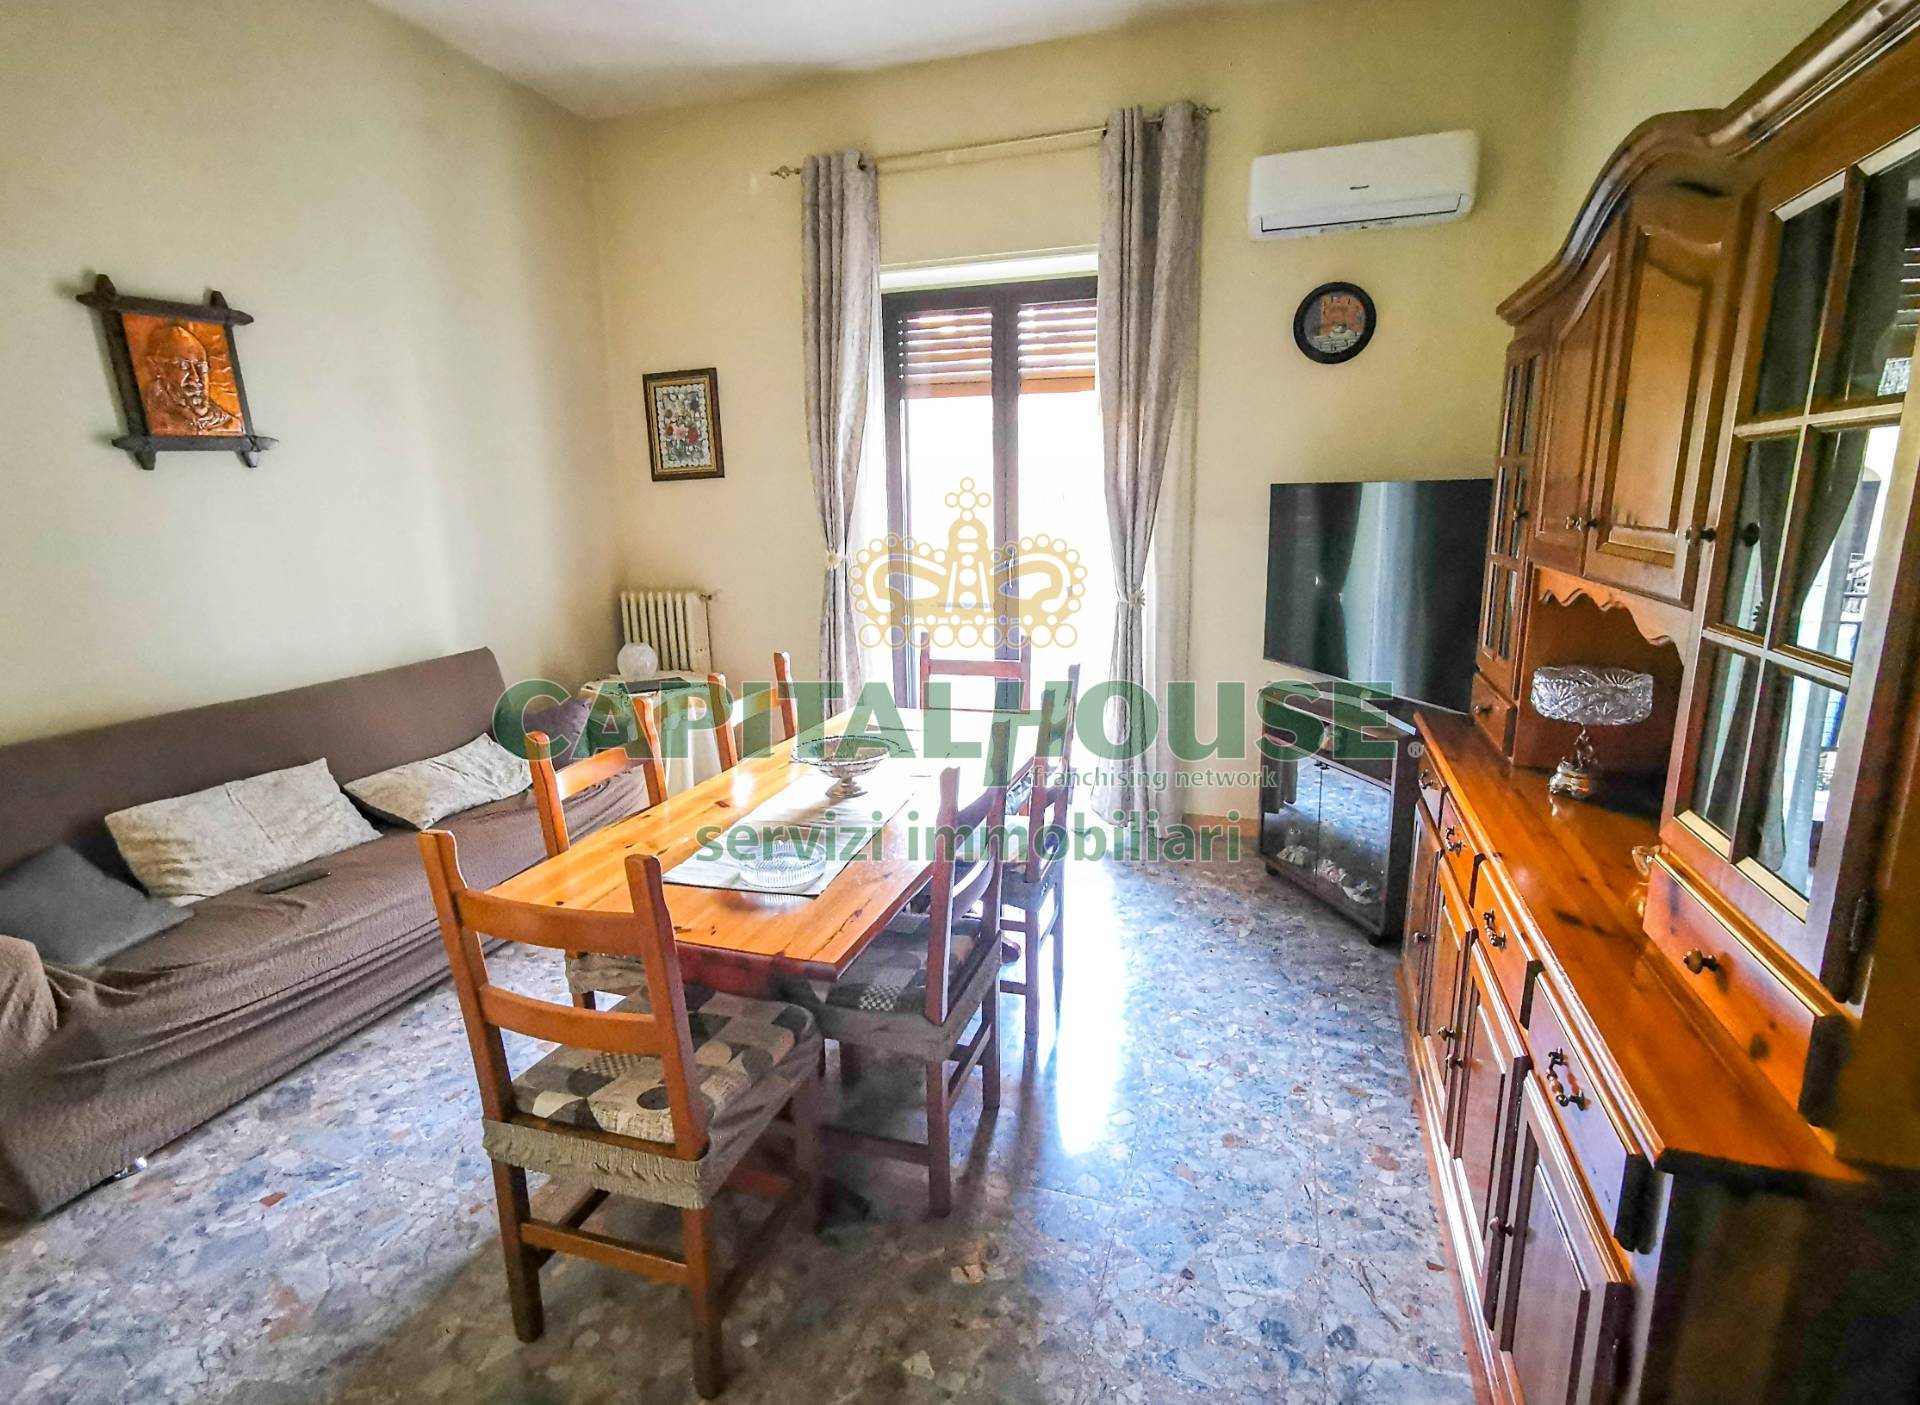 Appartamento in vendita a Santa Maria Capua Vetere, 4 locali, zona Località: ZonaVilla, prezzo € 93.000 | PortaleAgenzieImmobiliari.it